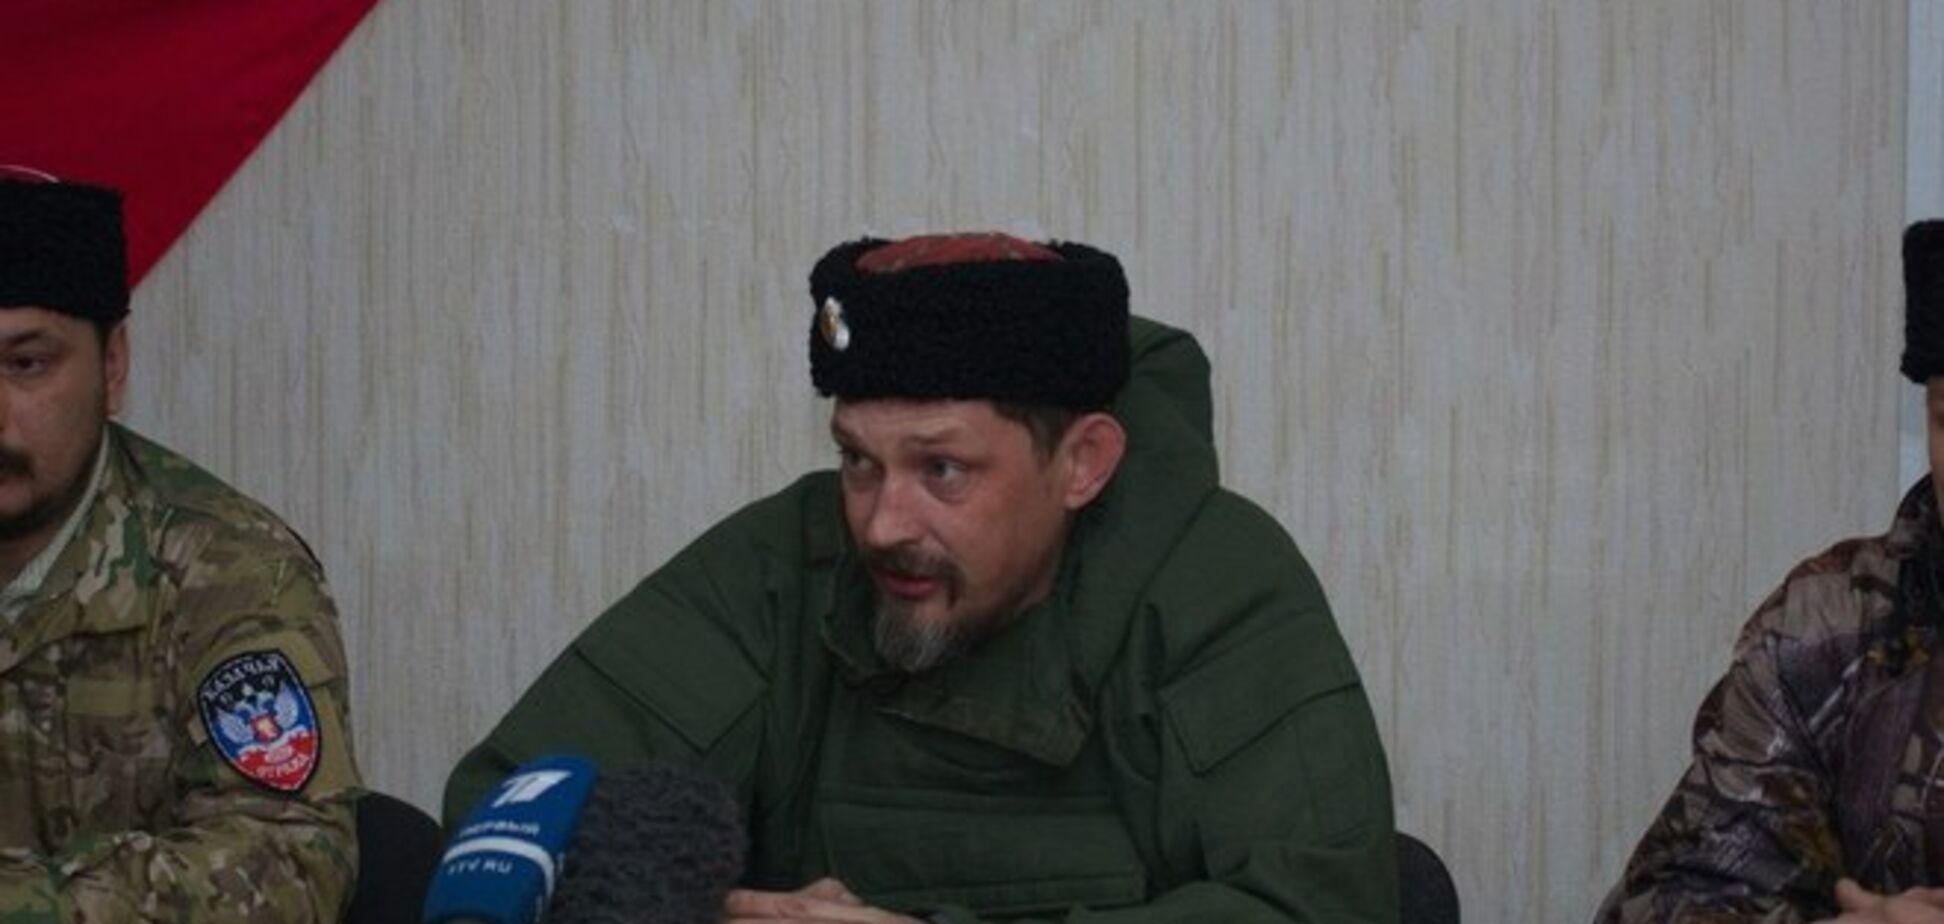 Ватажок 'козаків' 'ЛНР' пригрозив, що тепер брати в полон українських солдатів його банда не буде